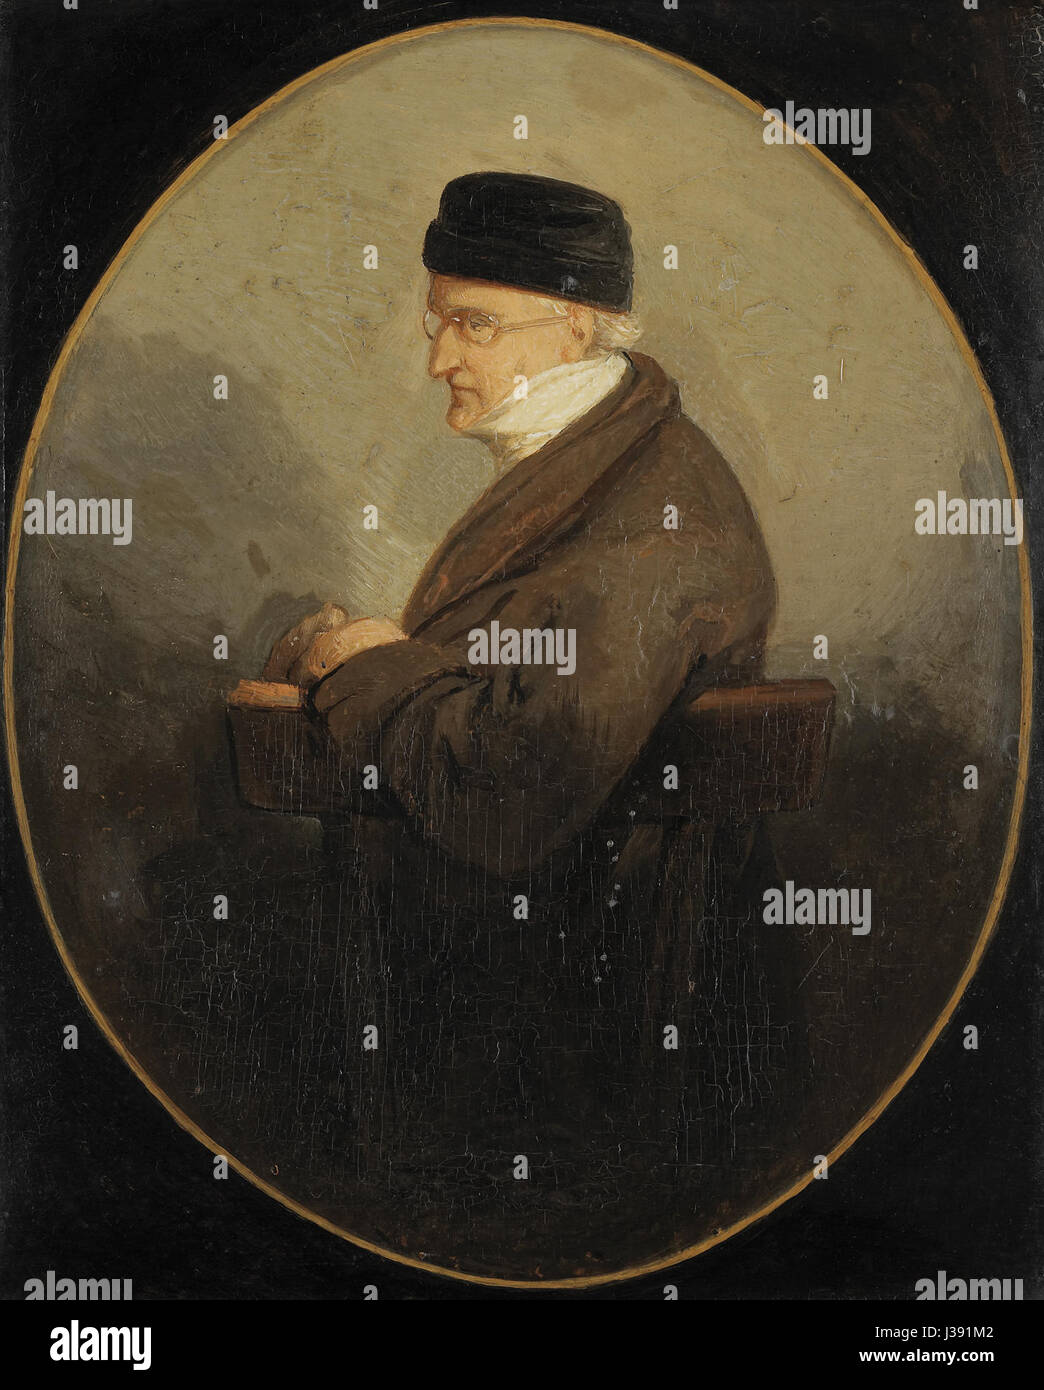 David Pierre Giottino Humbert de Superville (1770 1849), schilder en schrijver Rijksmuseum SK A 1464 Stock Photo